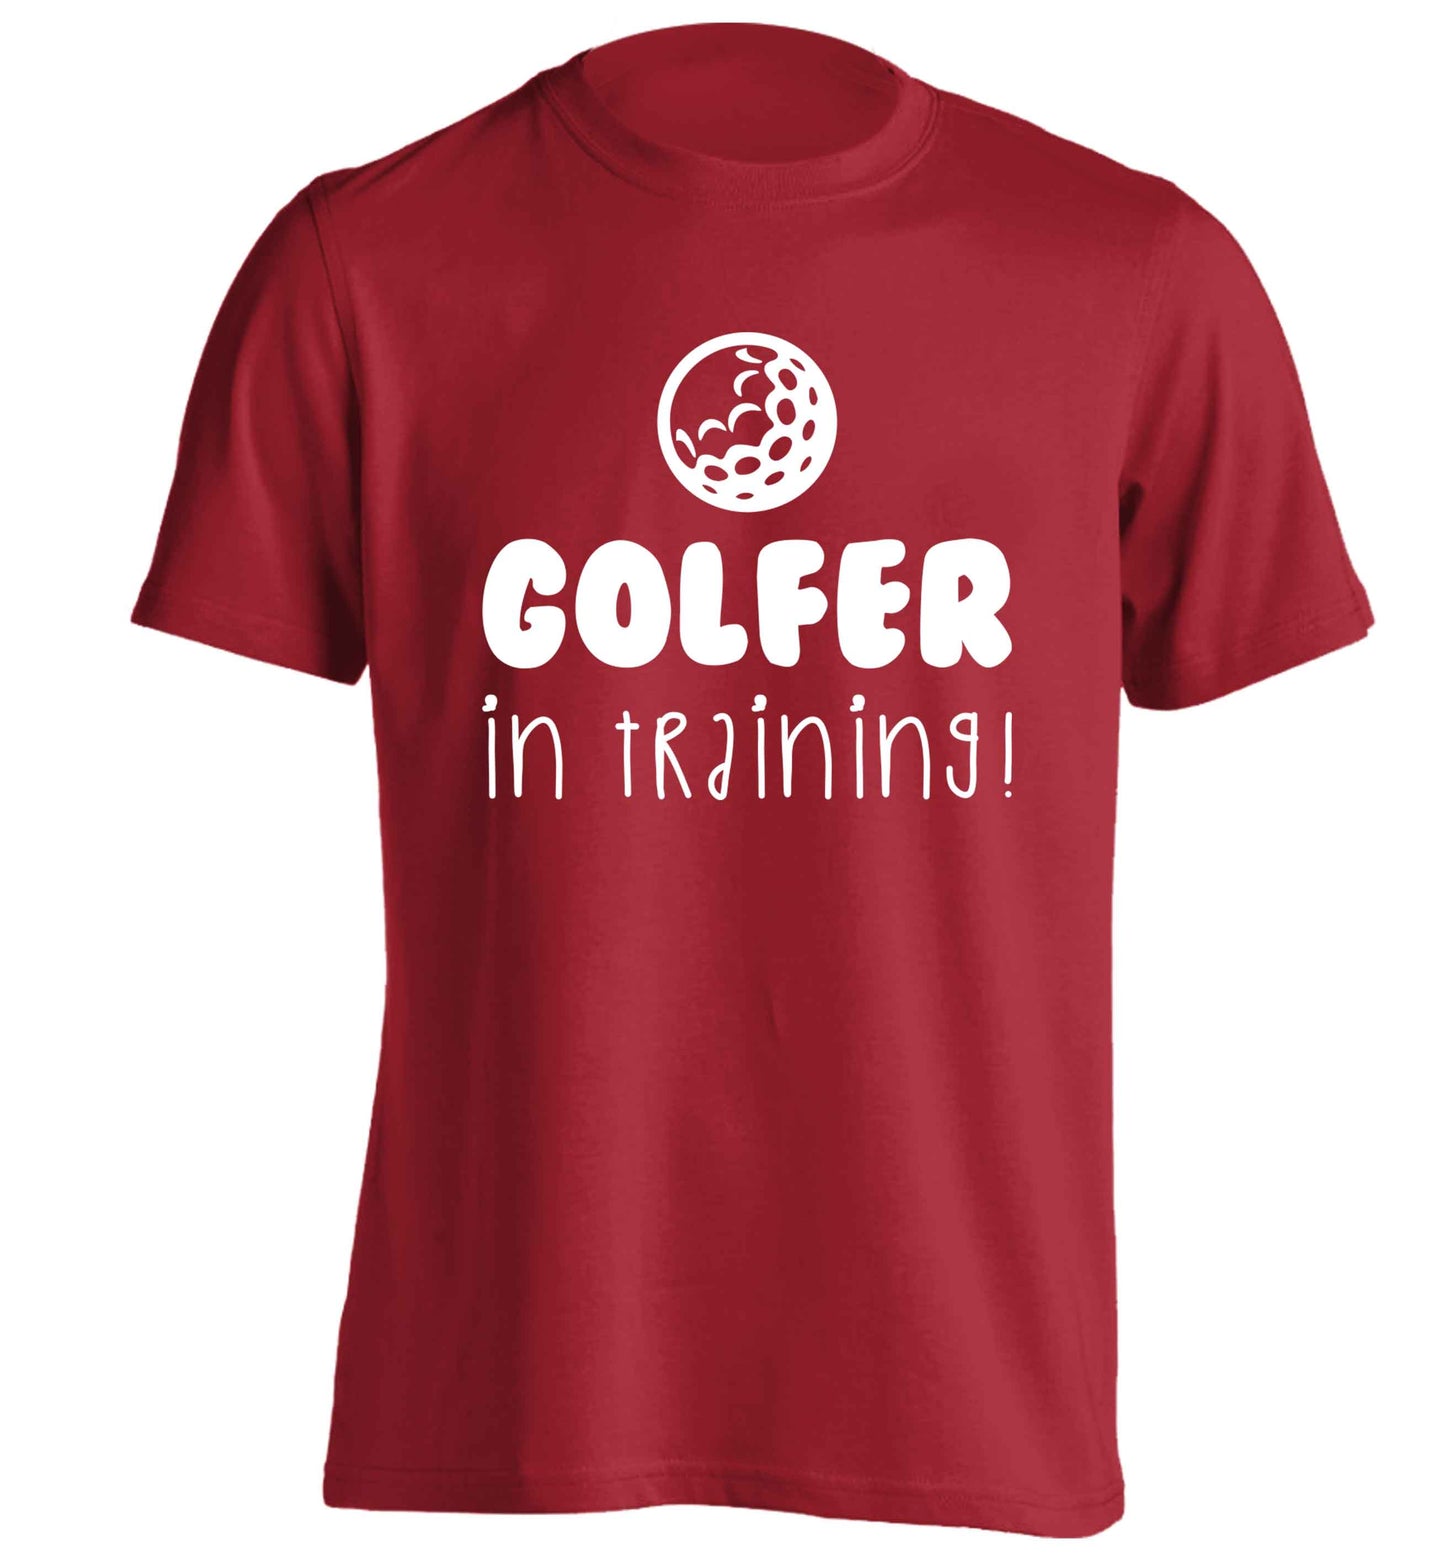 Golfer in training adults unisex red Tshirt 2XL